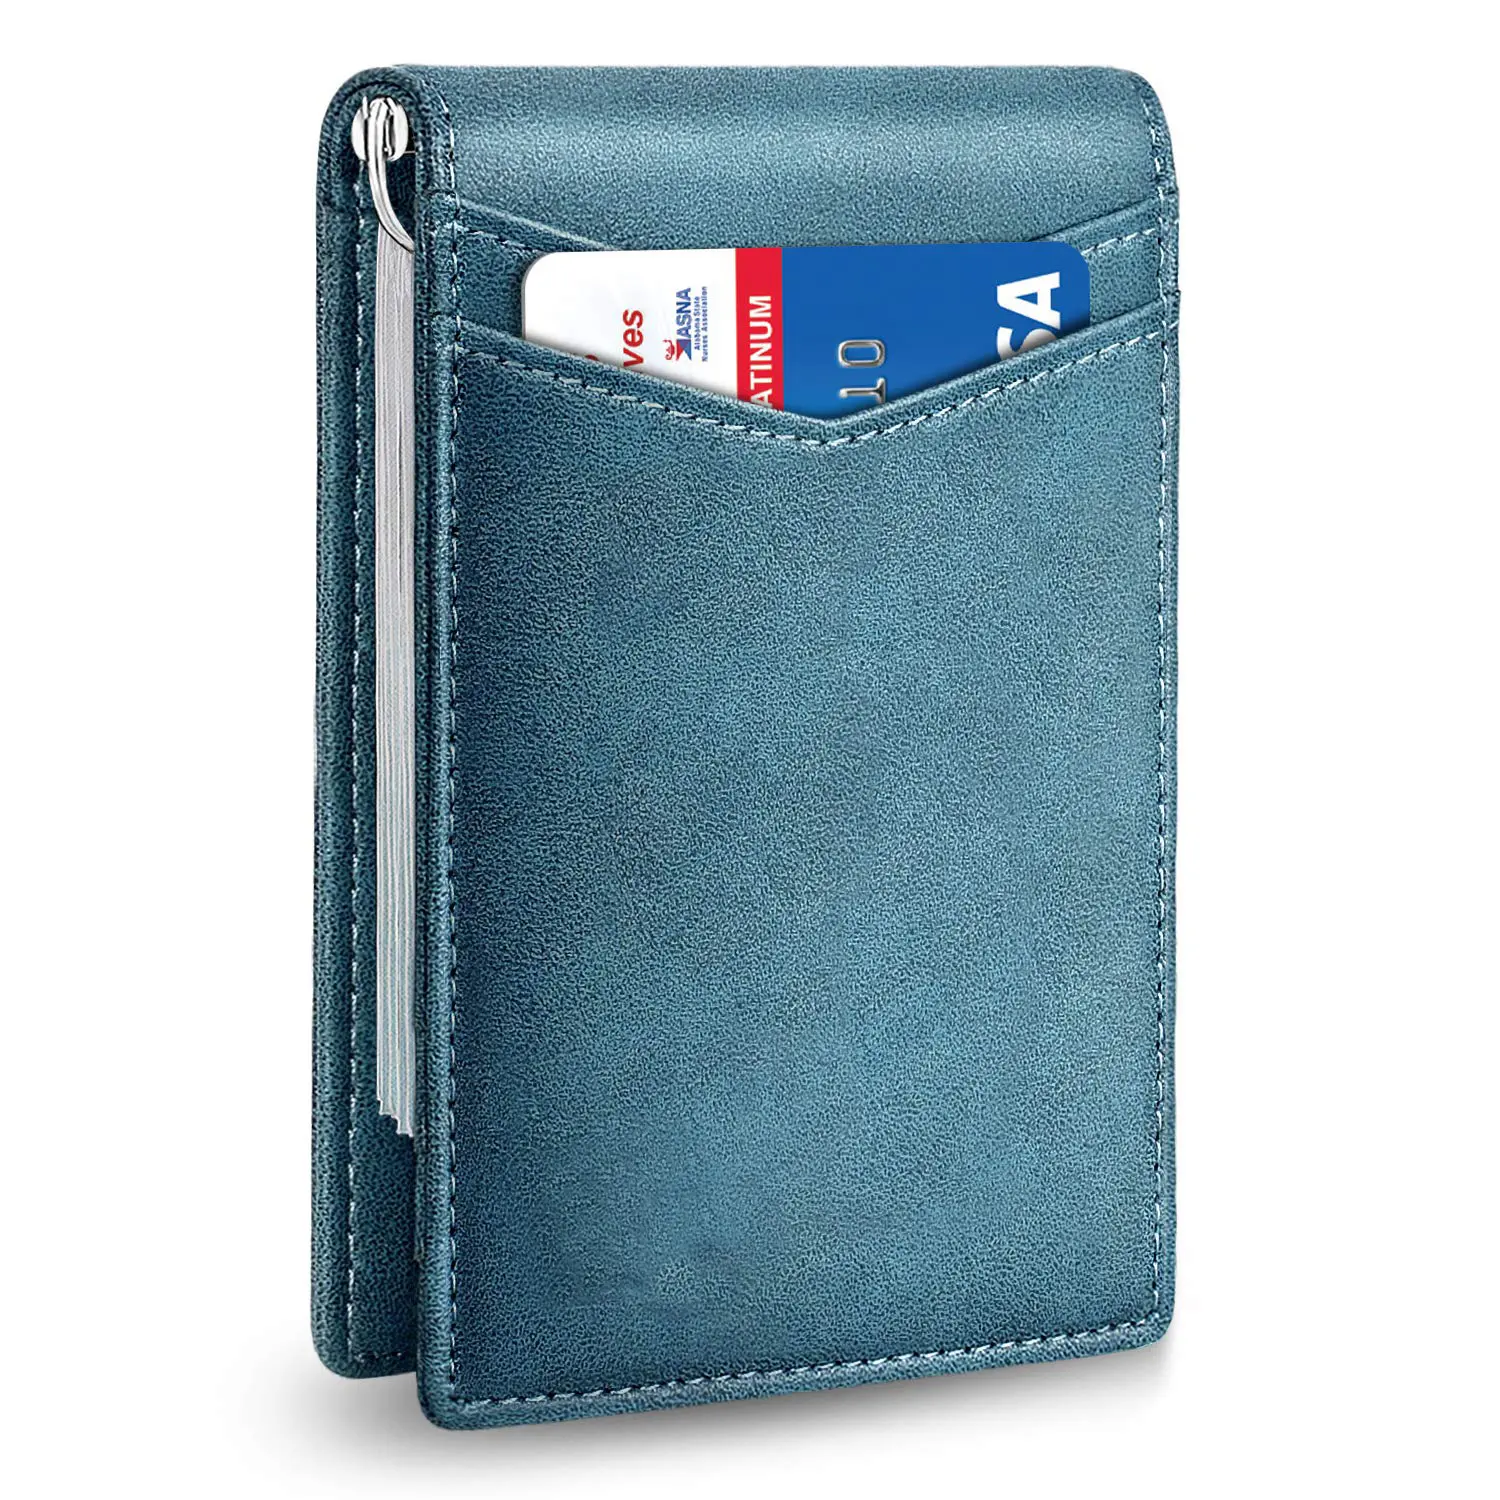 Popüler ultra ince minimalist para klip cüzdan RFID engelleme hakiki deri erkek cüzdanları